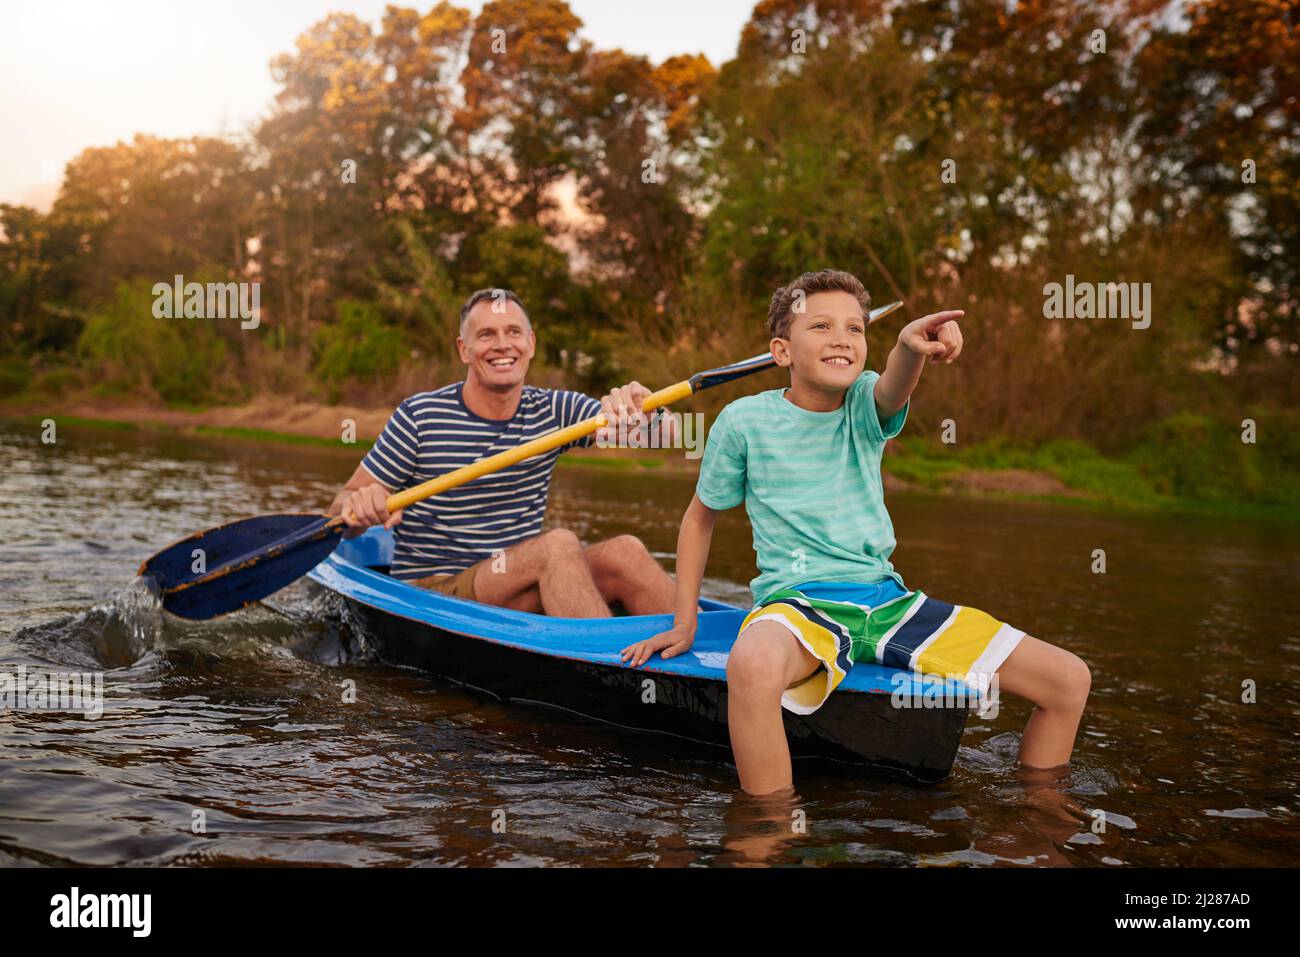 Profitez d'une promenade lente sur la rivière. Photo d'un père et d'un fils rasant un bateau ensemble sur un lac. Banque D'Images